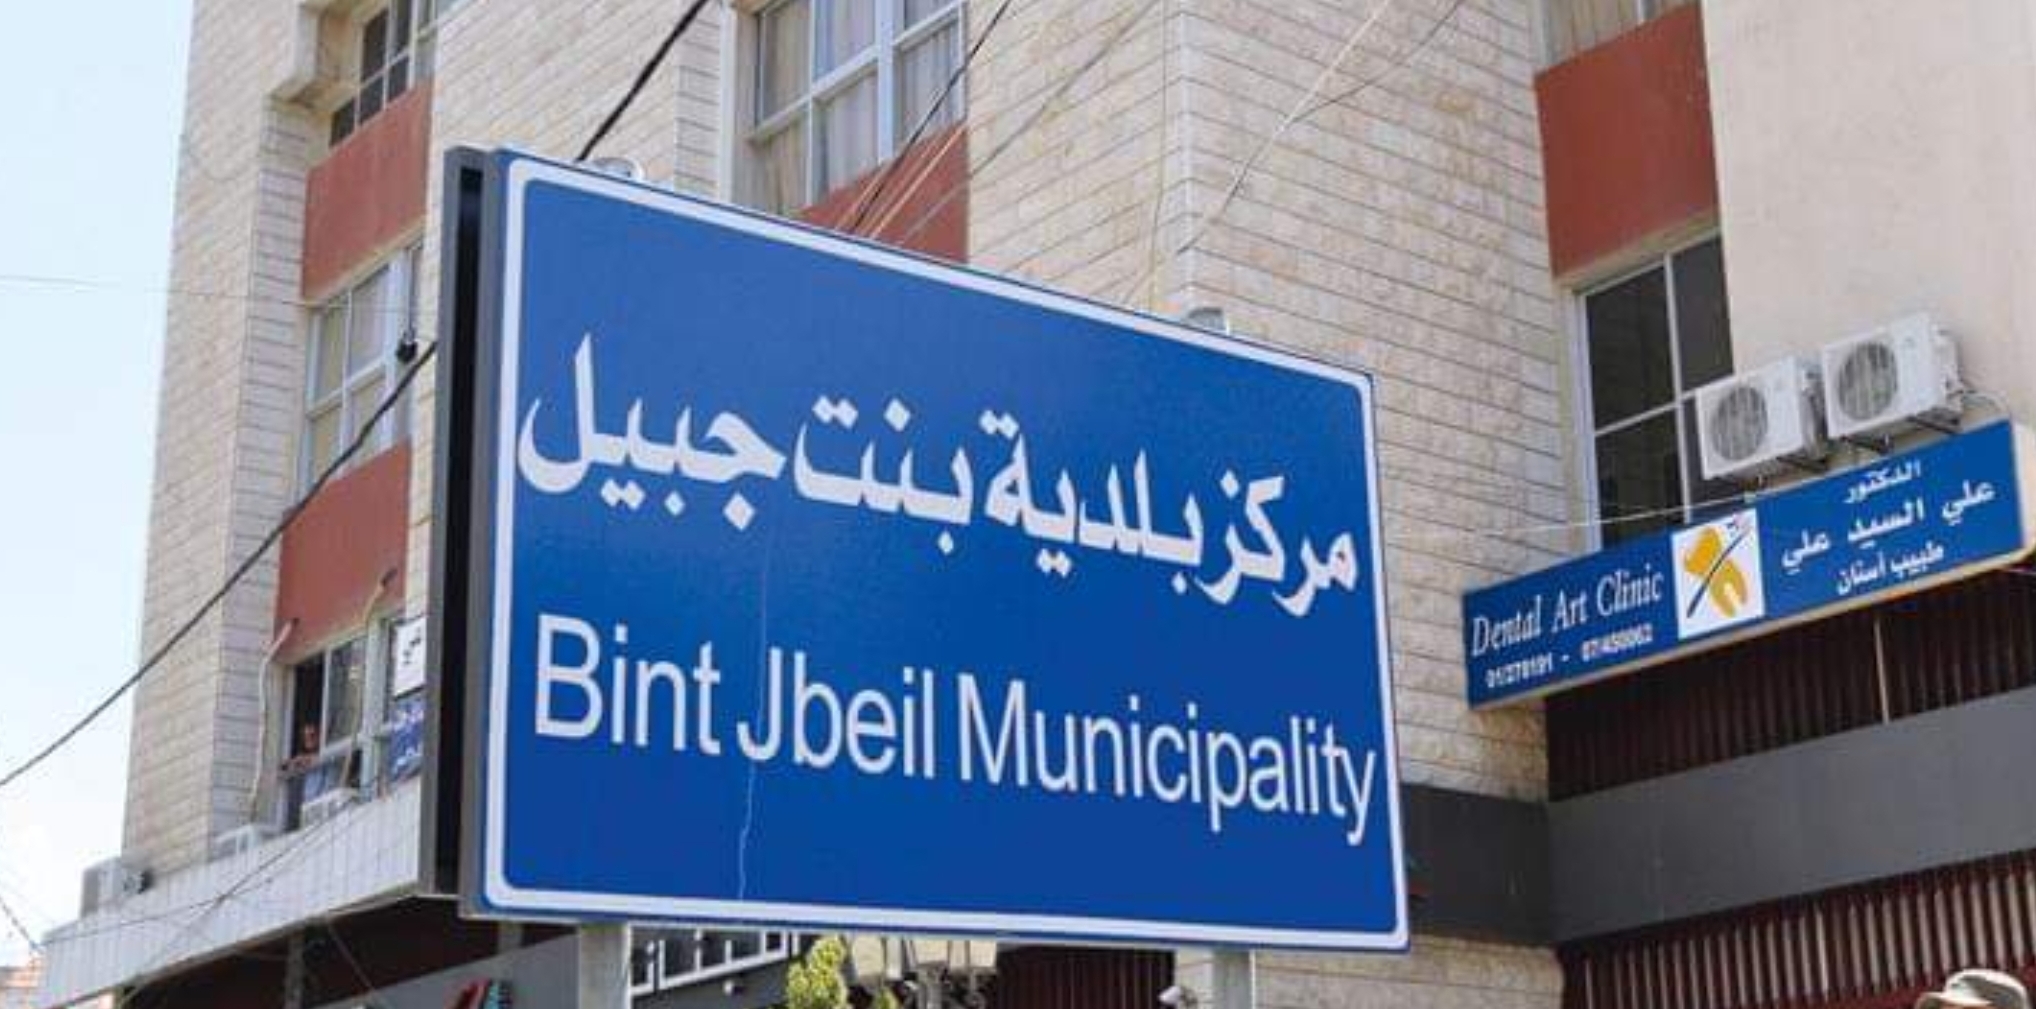 بلدية بنت جبيل توضح: 4 خزانات مازوت إضافية تحت الأرض كانت قد جهزتها البلدية استباقاً للأزمة إلا أن زيادة تقنين كهرباء الدولة استنزف المخزون الإحتياطي